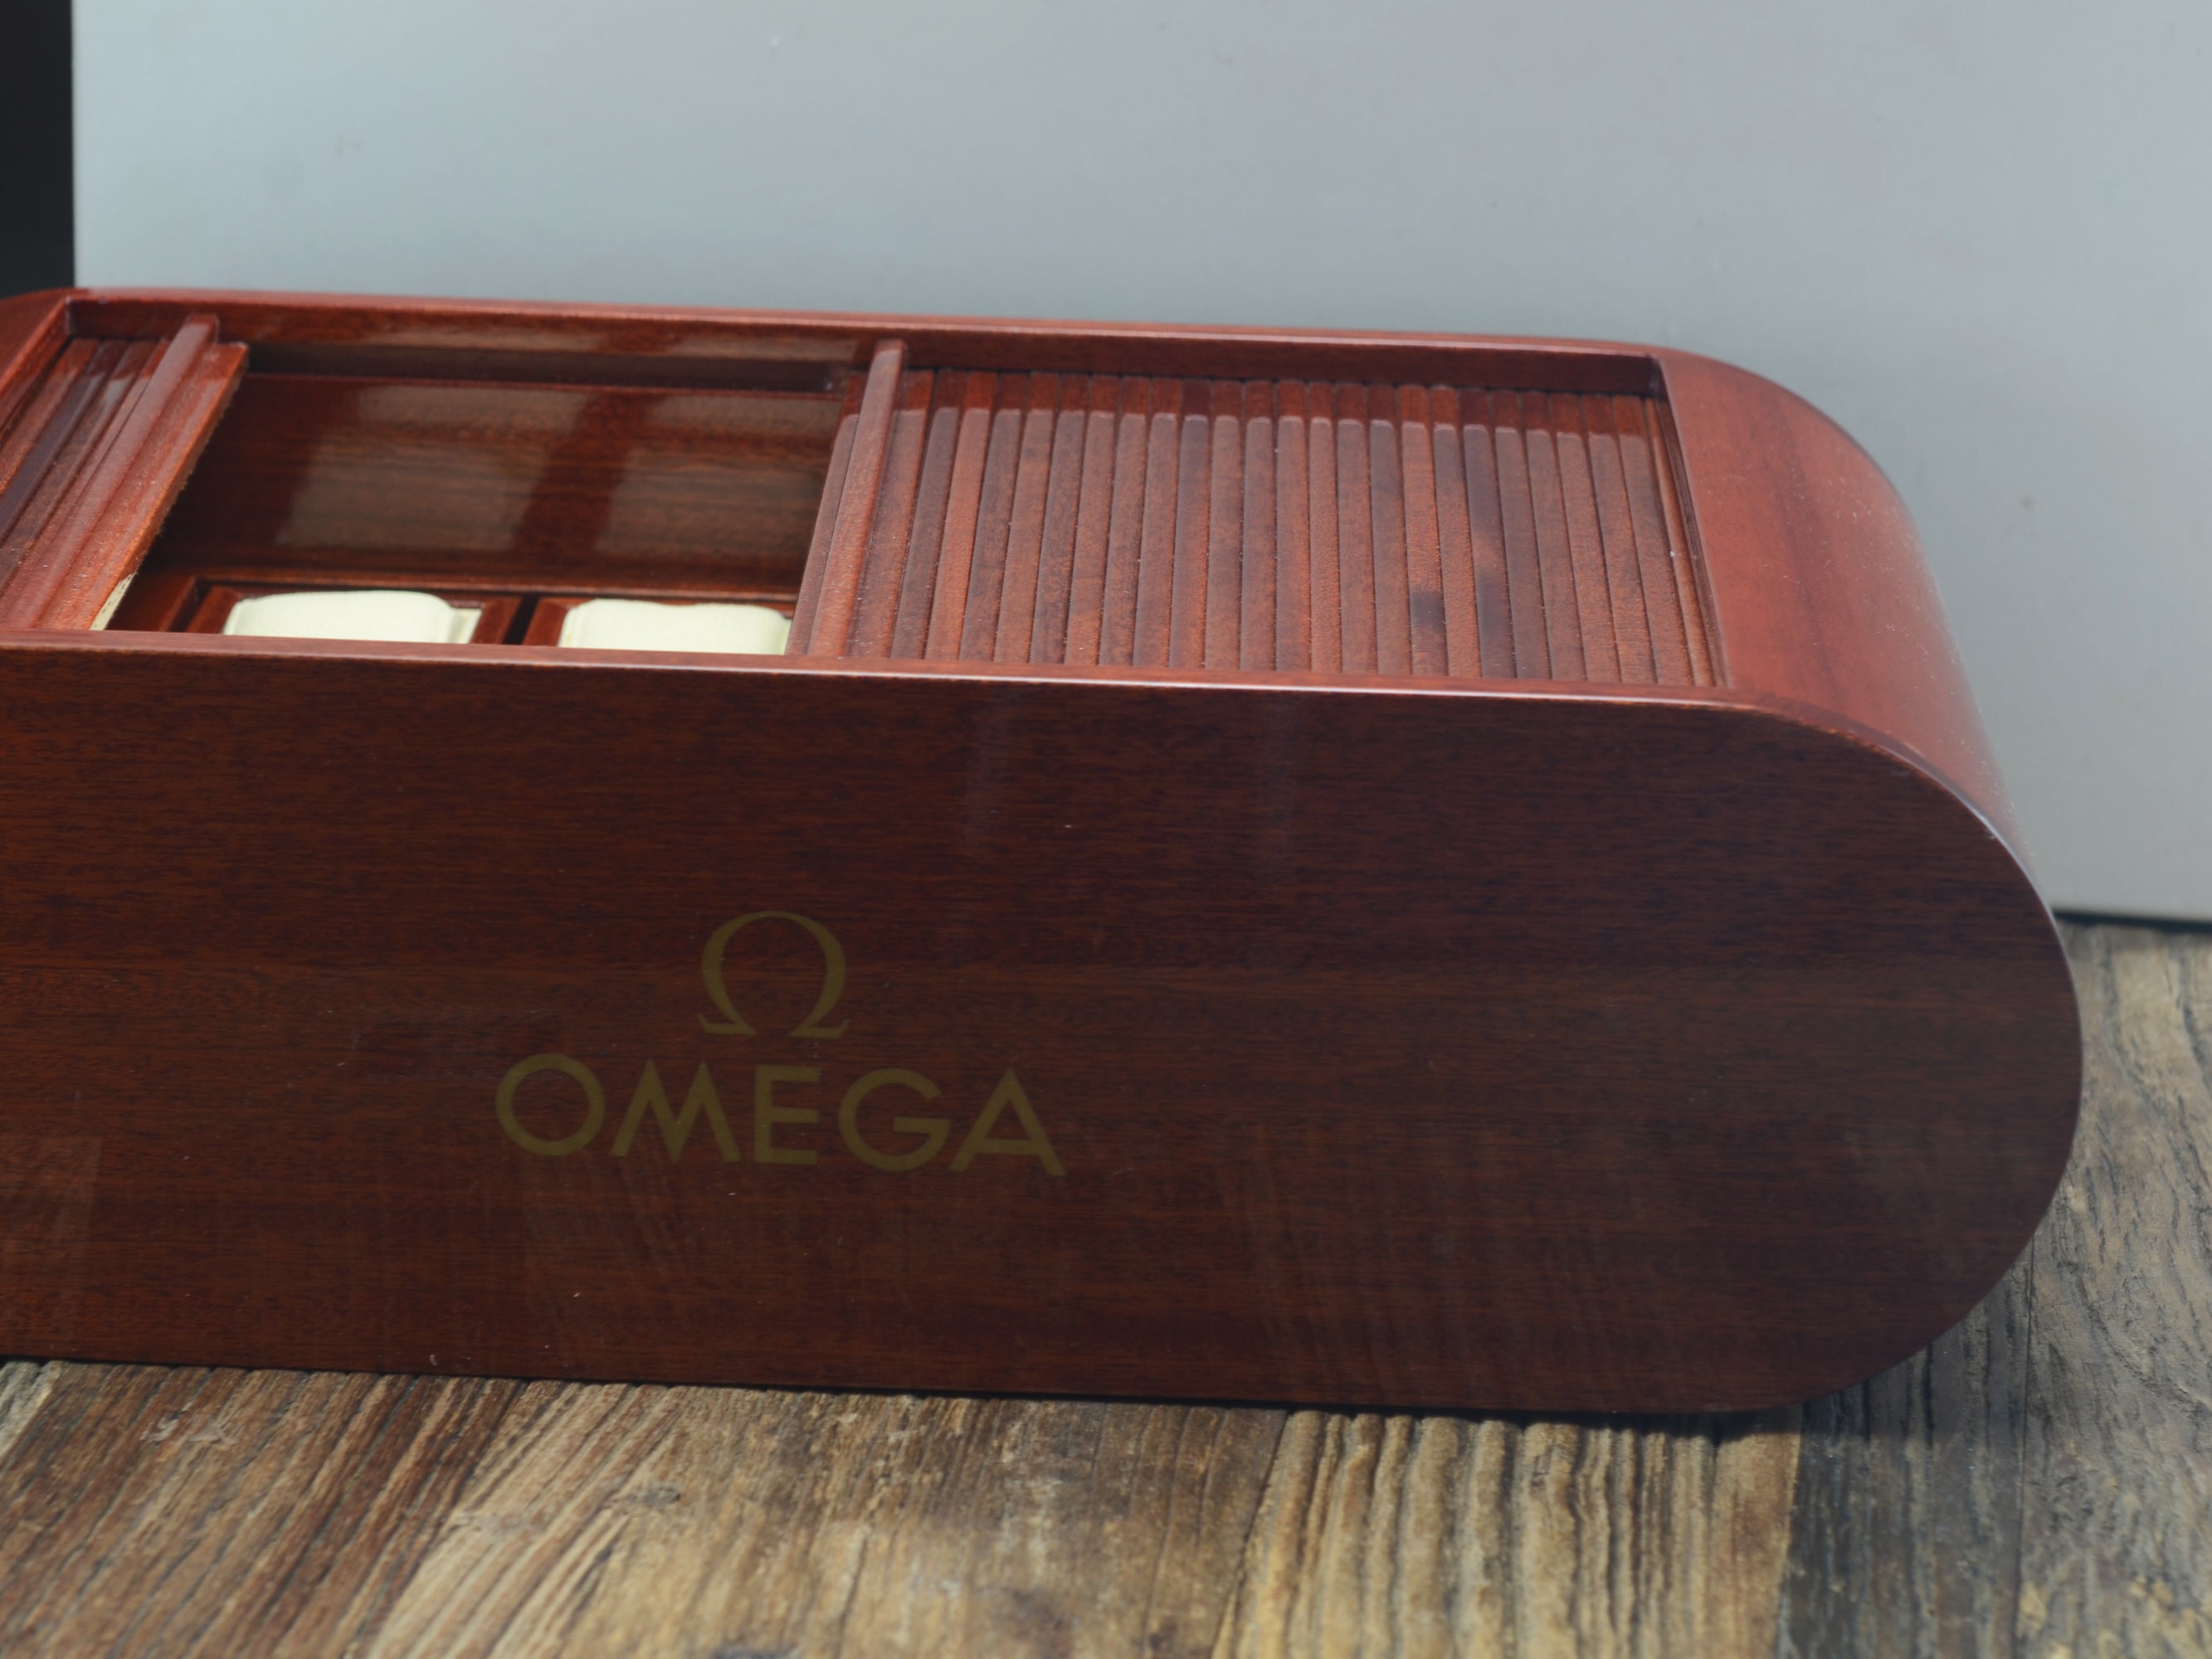 Zubehör: Omega Collector's Box Mahagoni für 8 Uhren